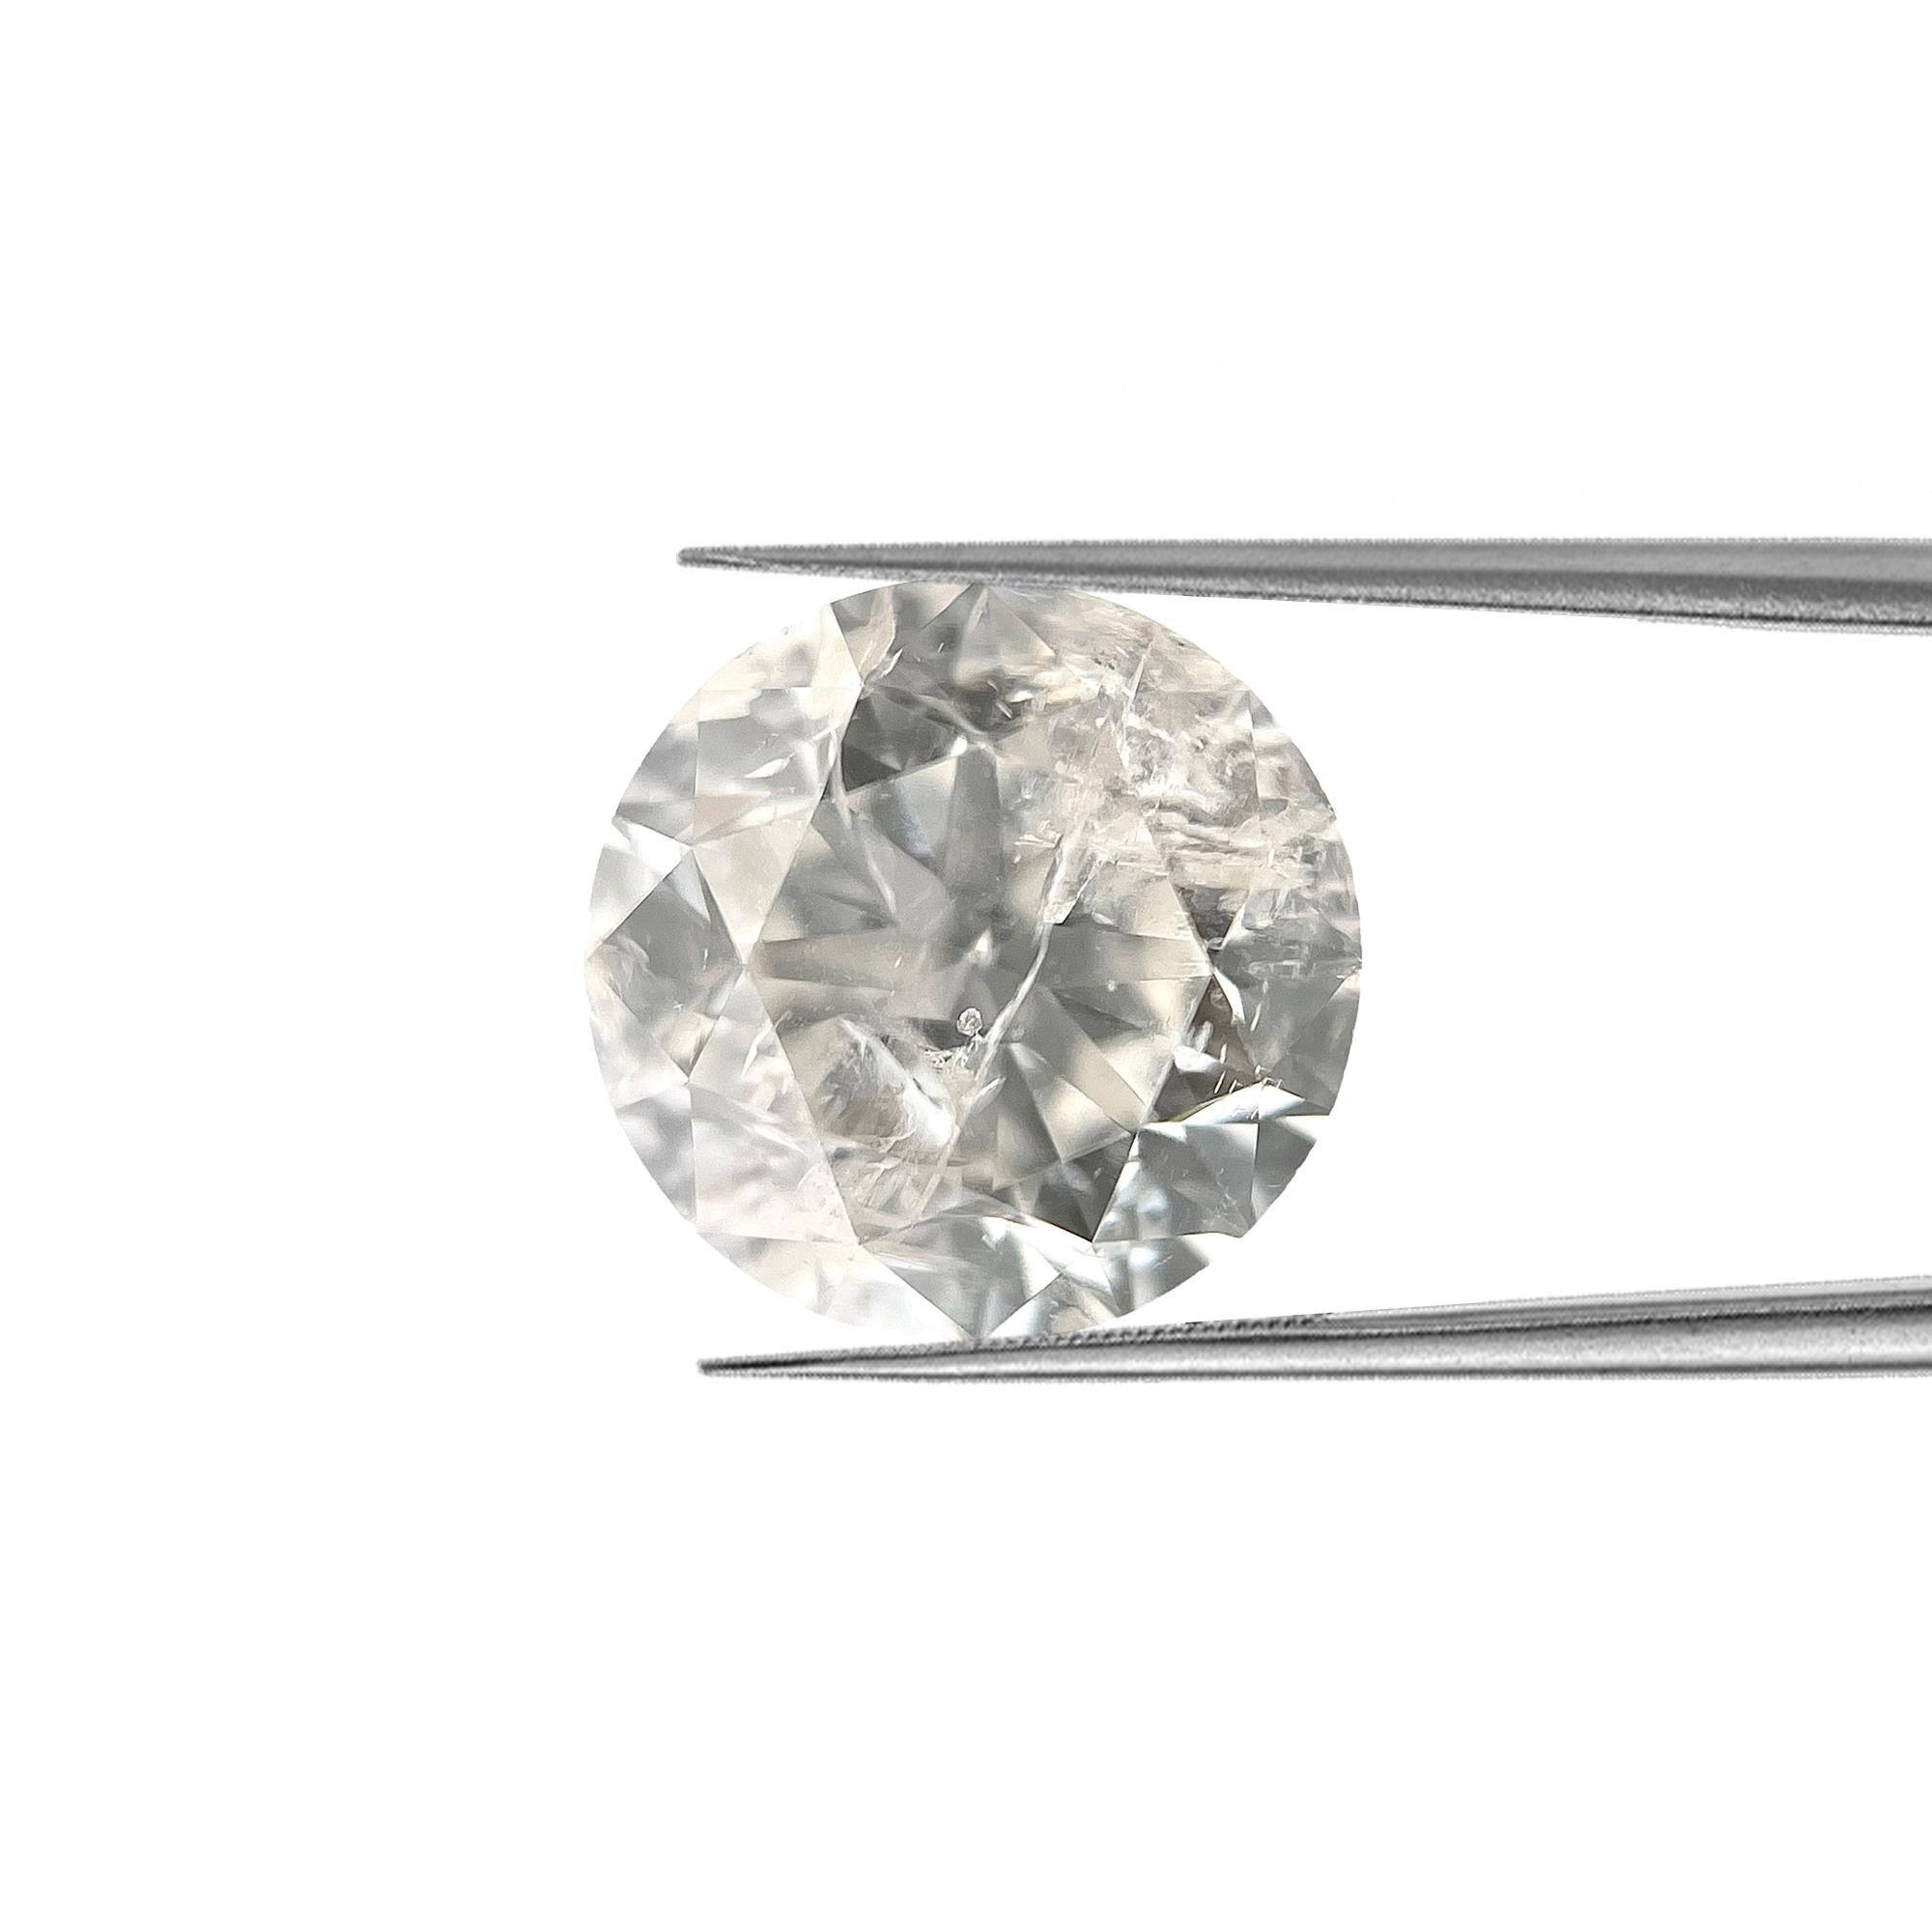 ARTIKELBEZEICHNUNG

ID-NUMMER:NYC57483
Steinform:Runder Glanz
Gewicht des Diamanten:1,45 Karat
Clarity:I1
Farbe:H
Schnitt: Rund 
Abmessungen: 6,91 x 6,93 x 4,49 mm
Schätzungswert:$2698.00
Unser Preis: $1.799,00

Diese echten Diamanten werden von